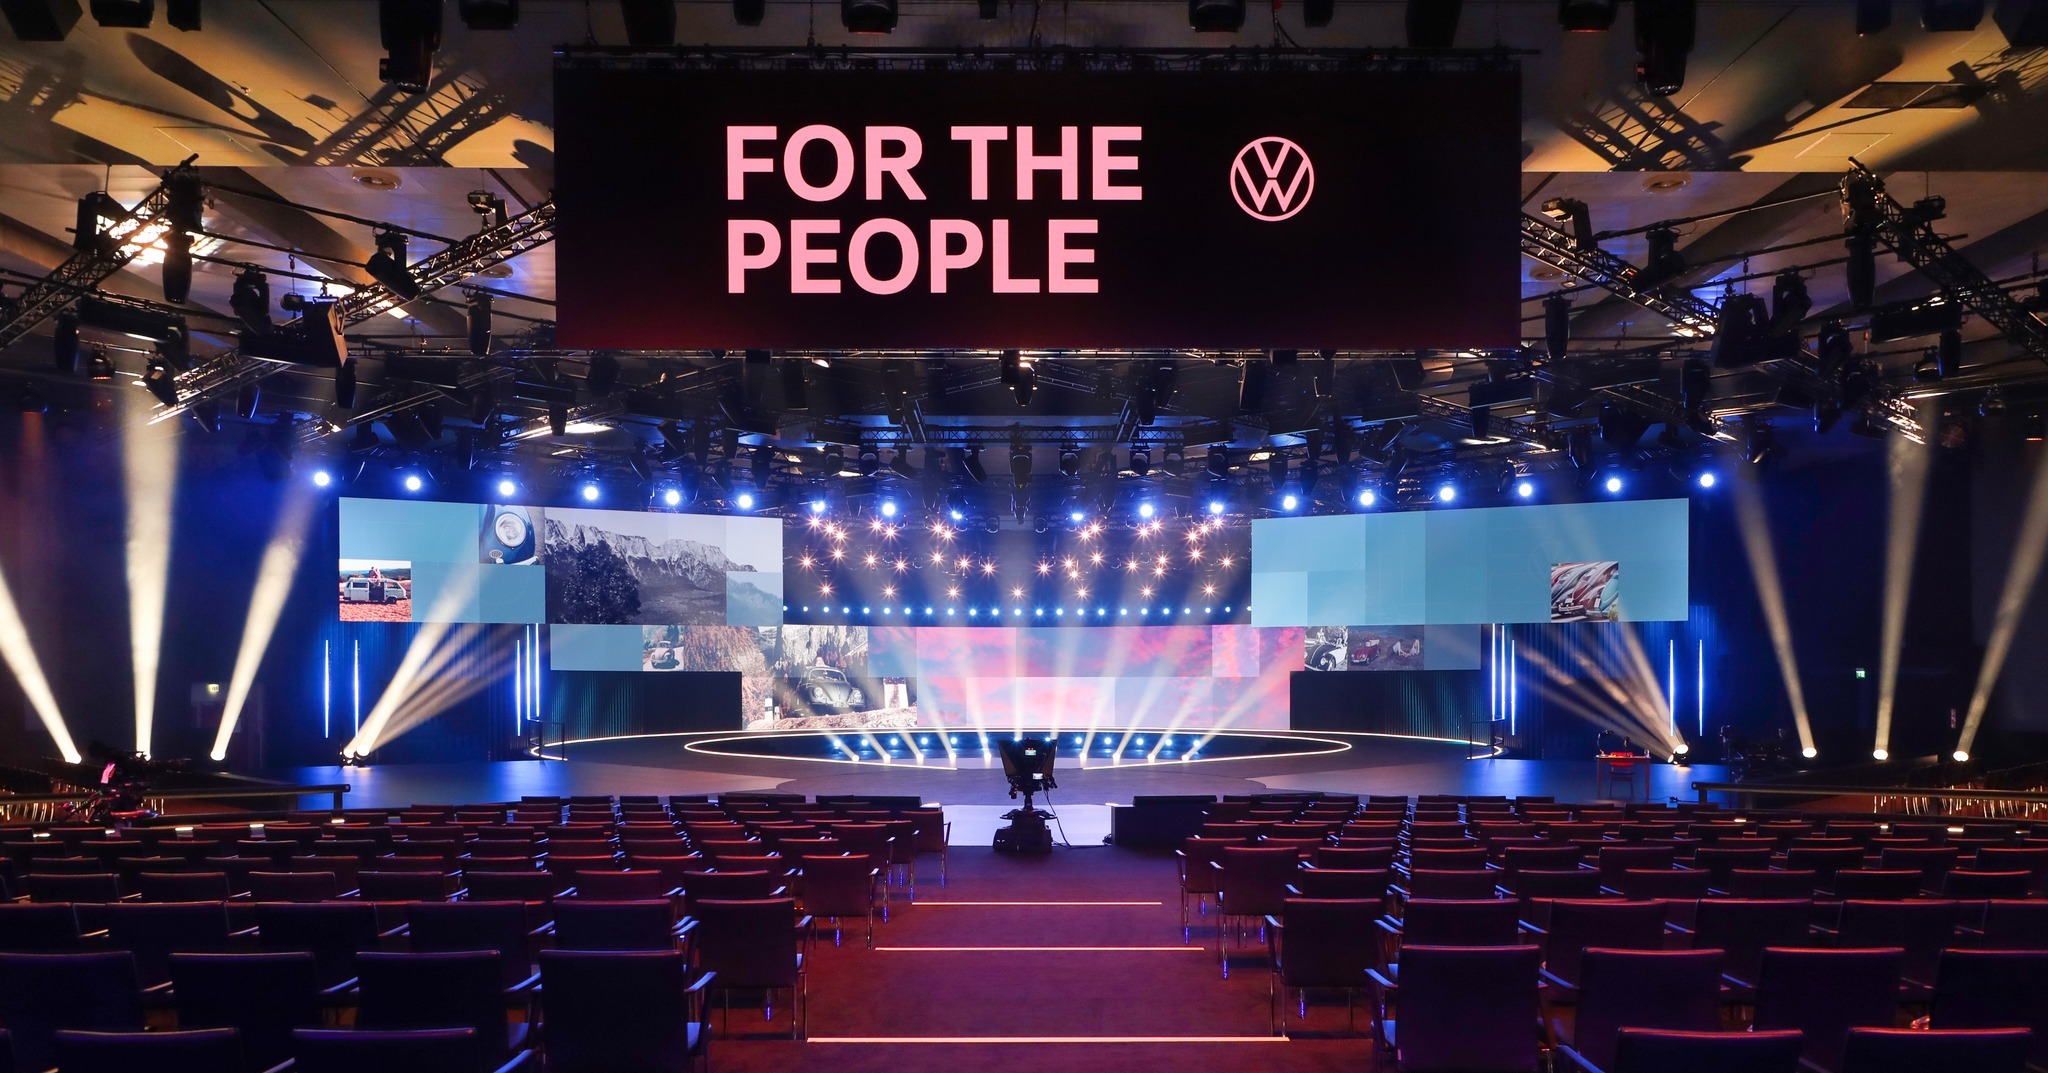 Als toonaangevende leverancier van evenemententechnologie leverde PRG rigging, verlichting, audio- en videotechnologie en intercomtechnologie om de wereldpremière van de "ID.2all" showauto van VW in Hamburg te vieren.